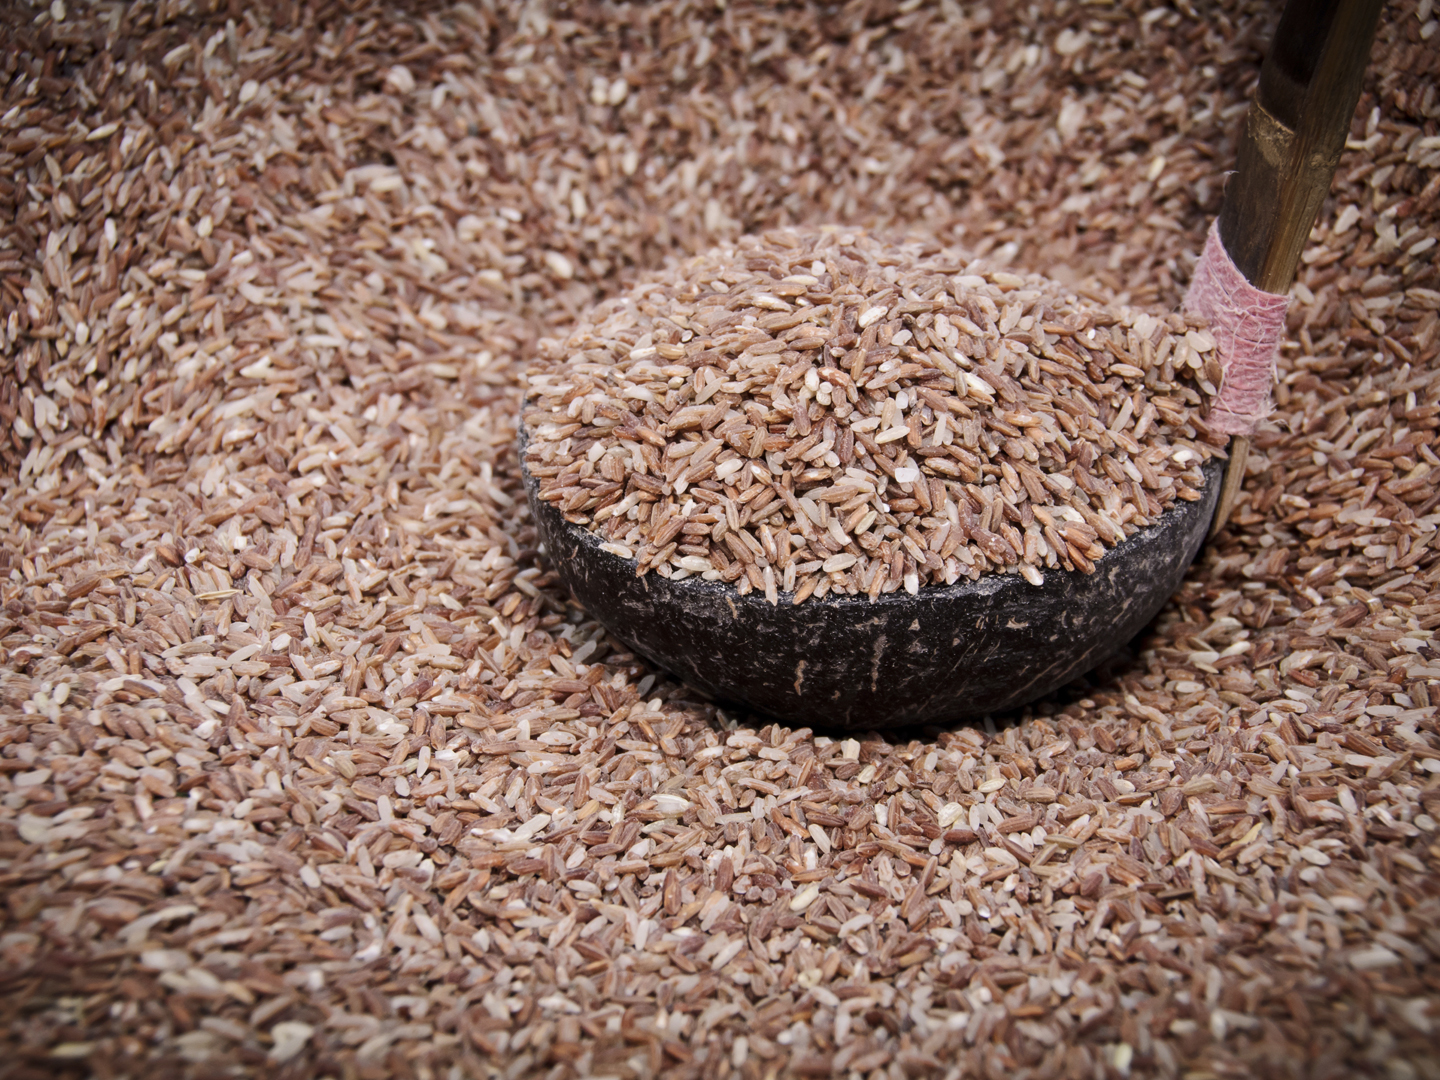 红米，也被称为杂草水稻，是一种低产水稻品种，在优质水稻的田里像杂草一样存在。红曲米是在大米上生长的酵母(红曲霉)的产物，在一些亚洲国家是一种主食。服用本品可提神、助消化、清除“血液阻塞”。它通常用于降低胆固醇。